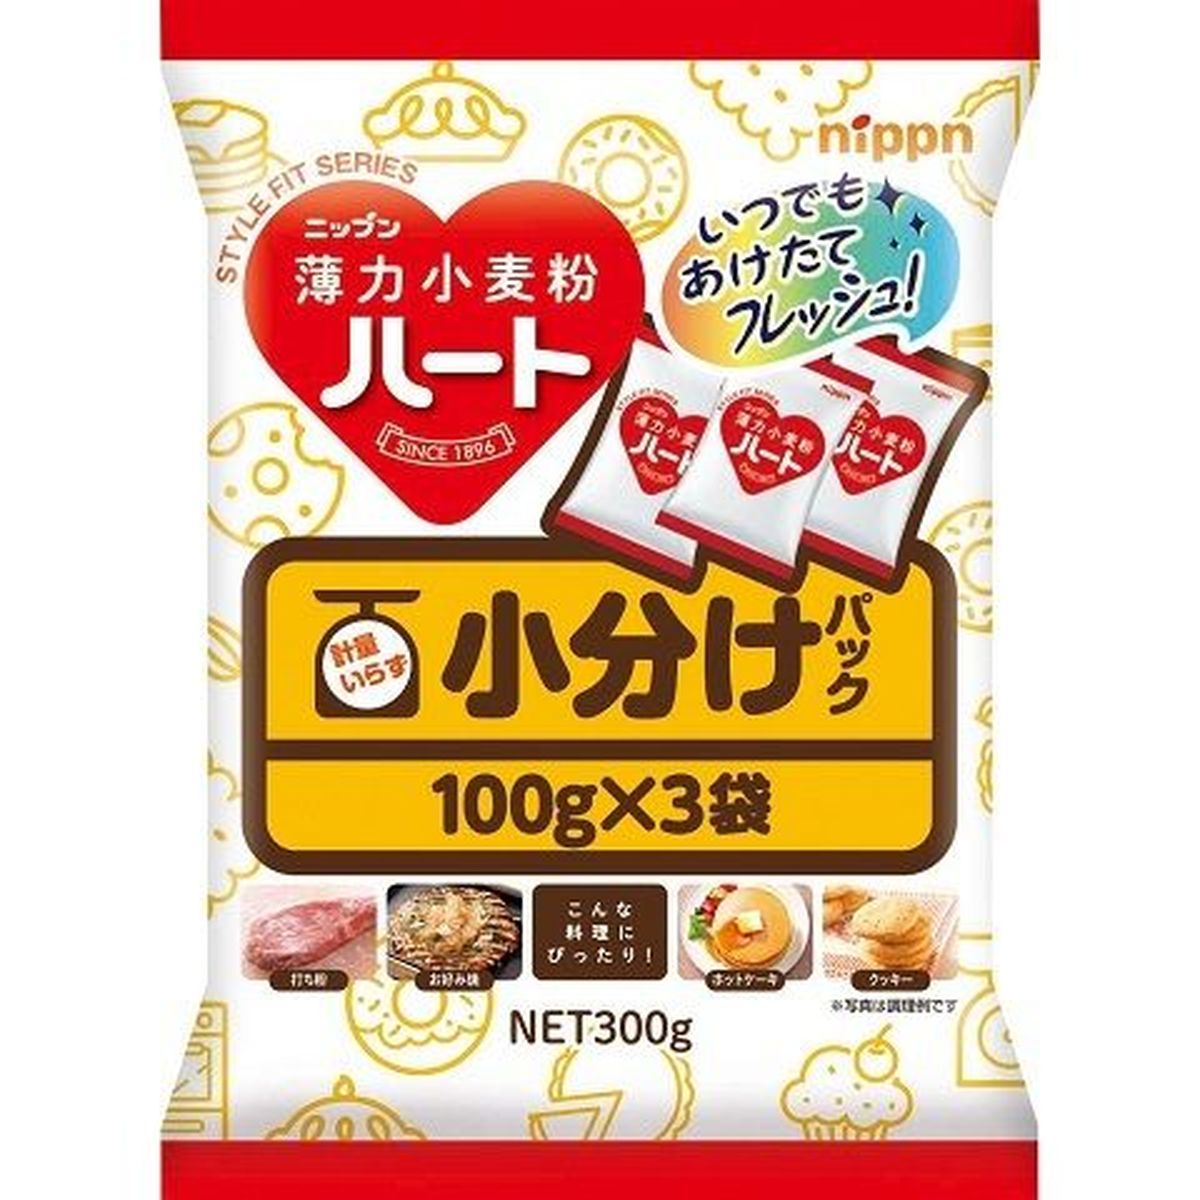 【12個入リ】ニップン ハート小分ケパック 薄力小麦粉 100gX3